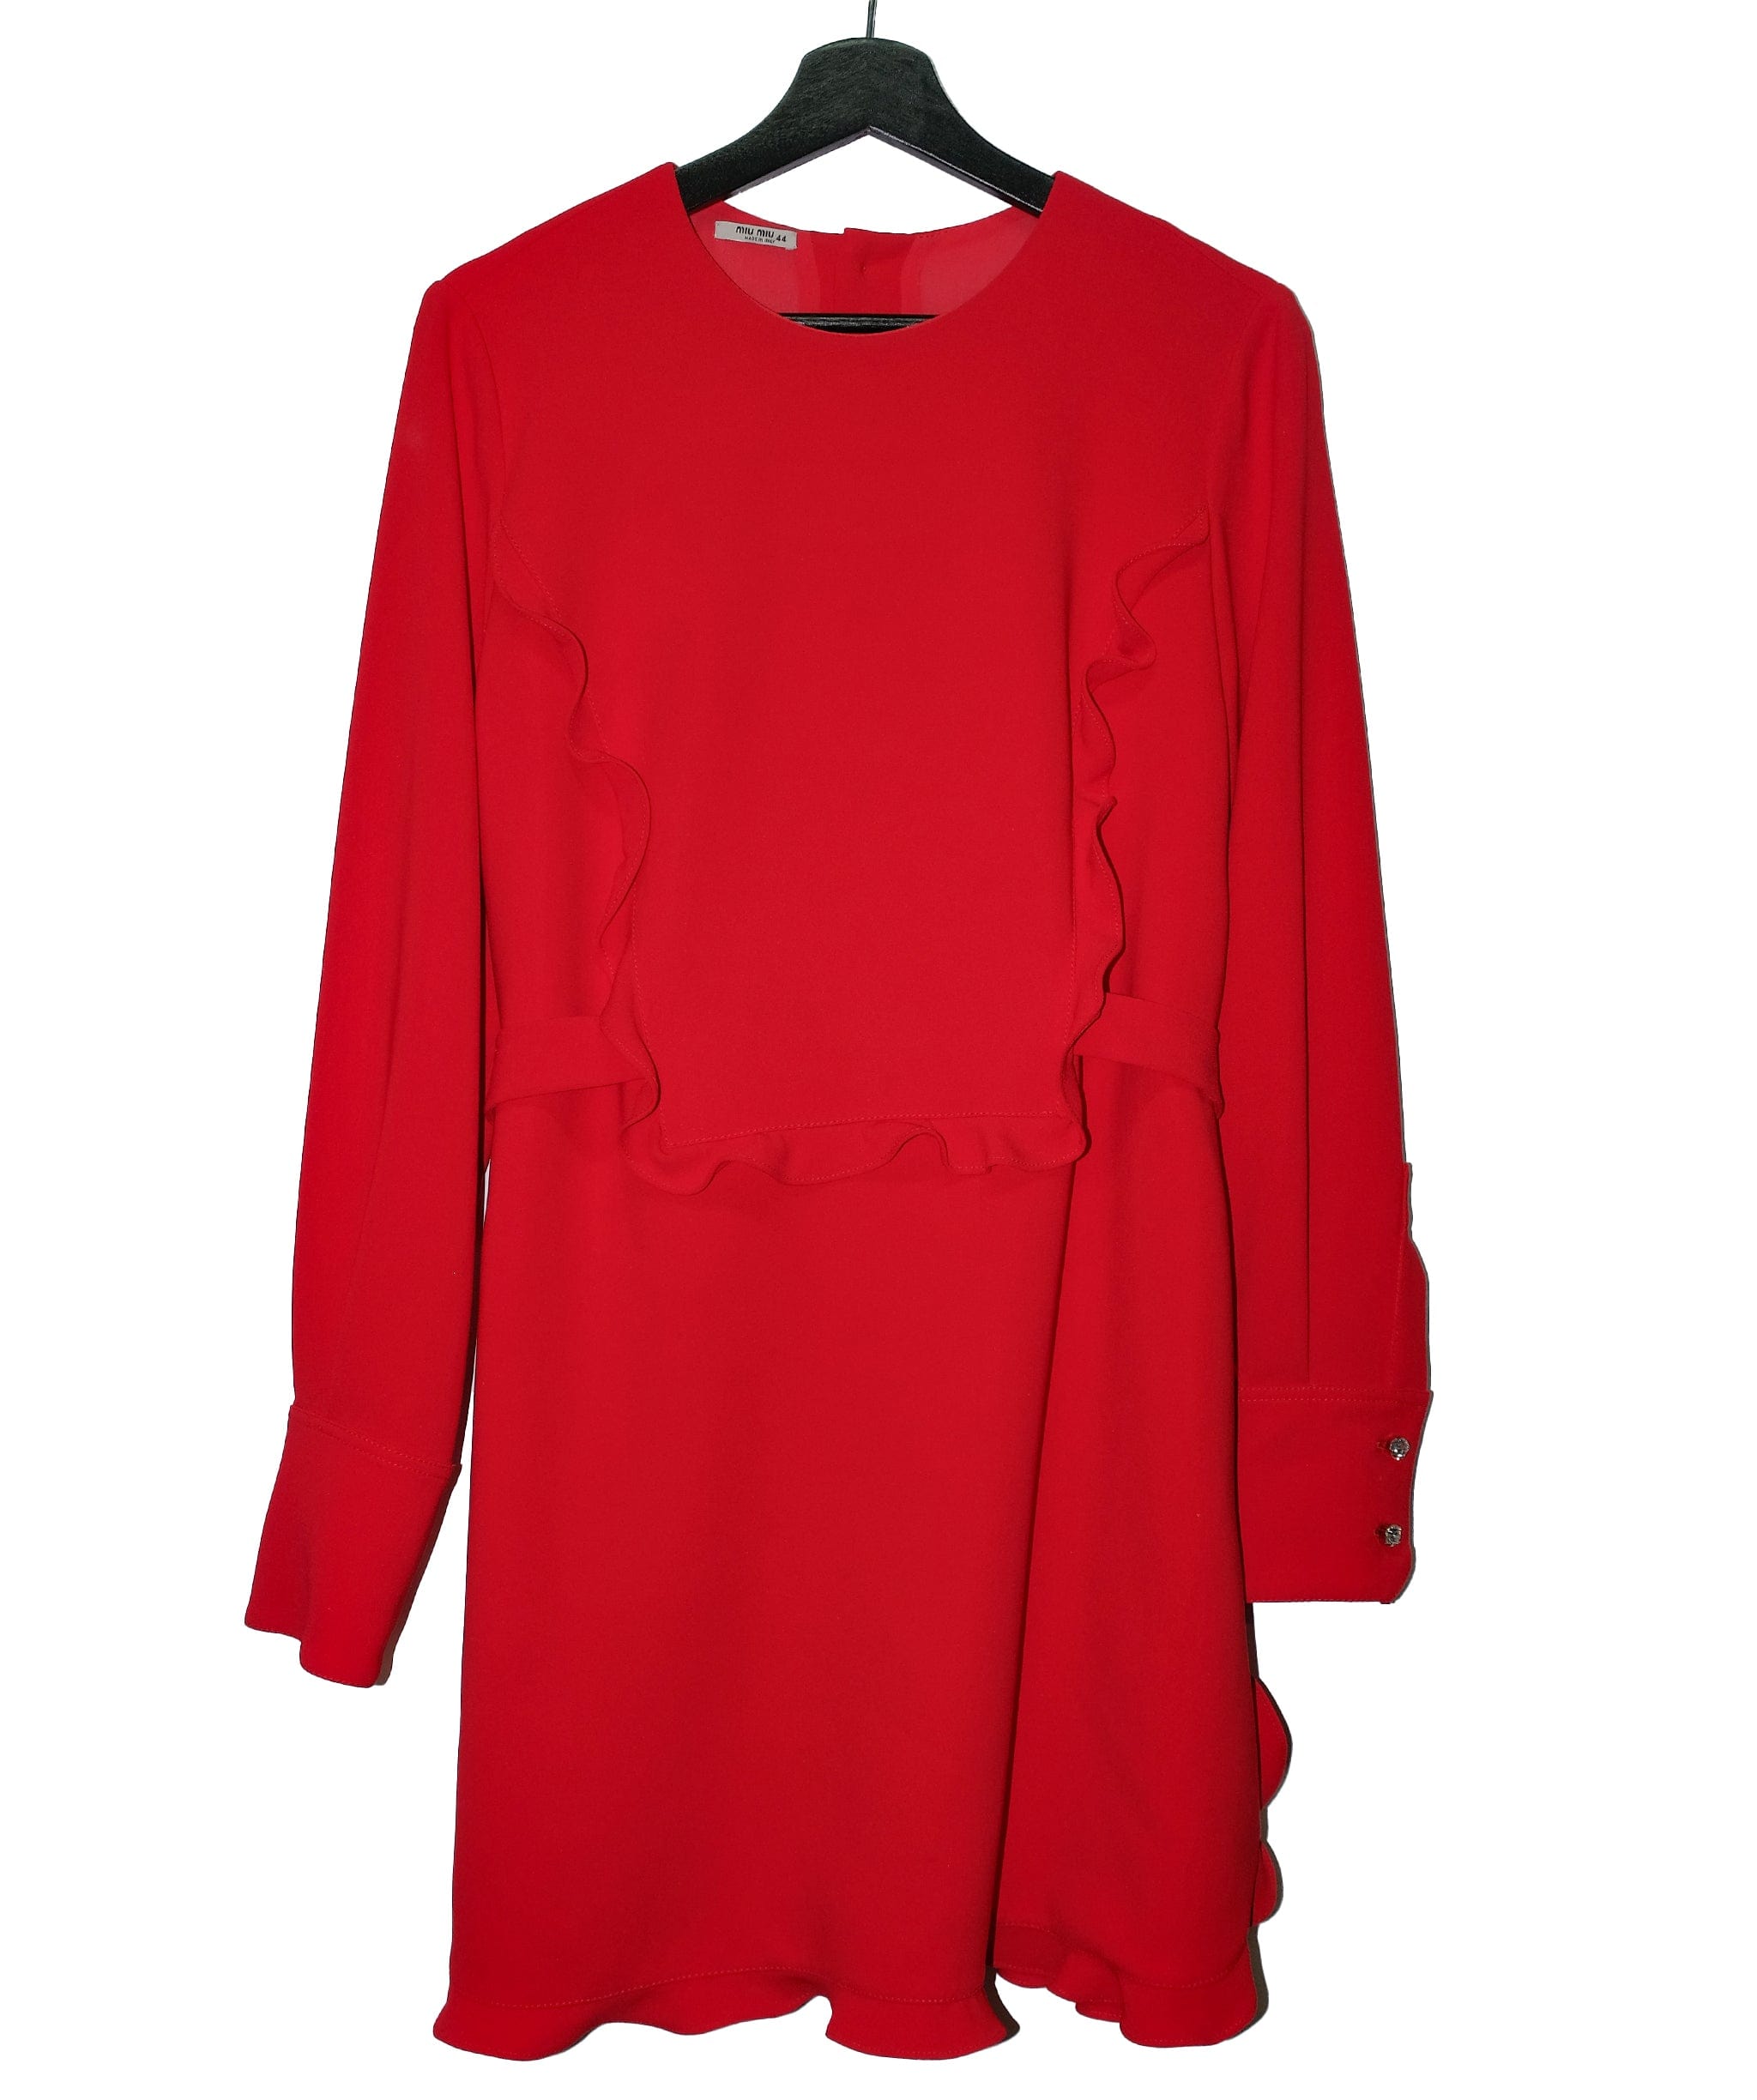 Miumiu Miu Miu Dress Red  Size 44 RJC2912